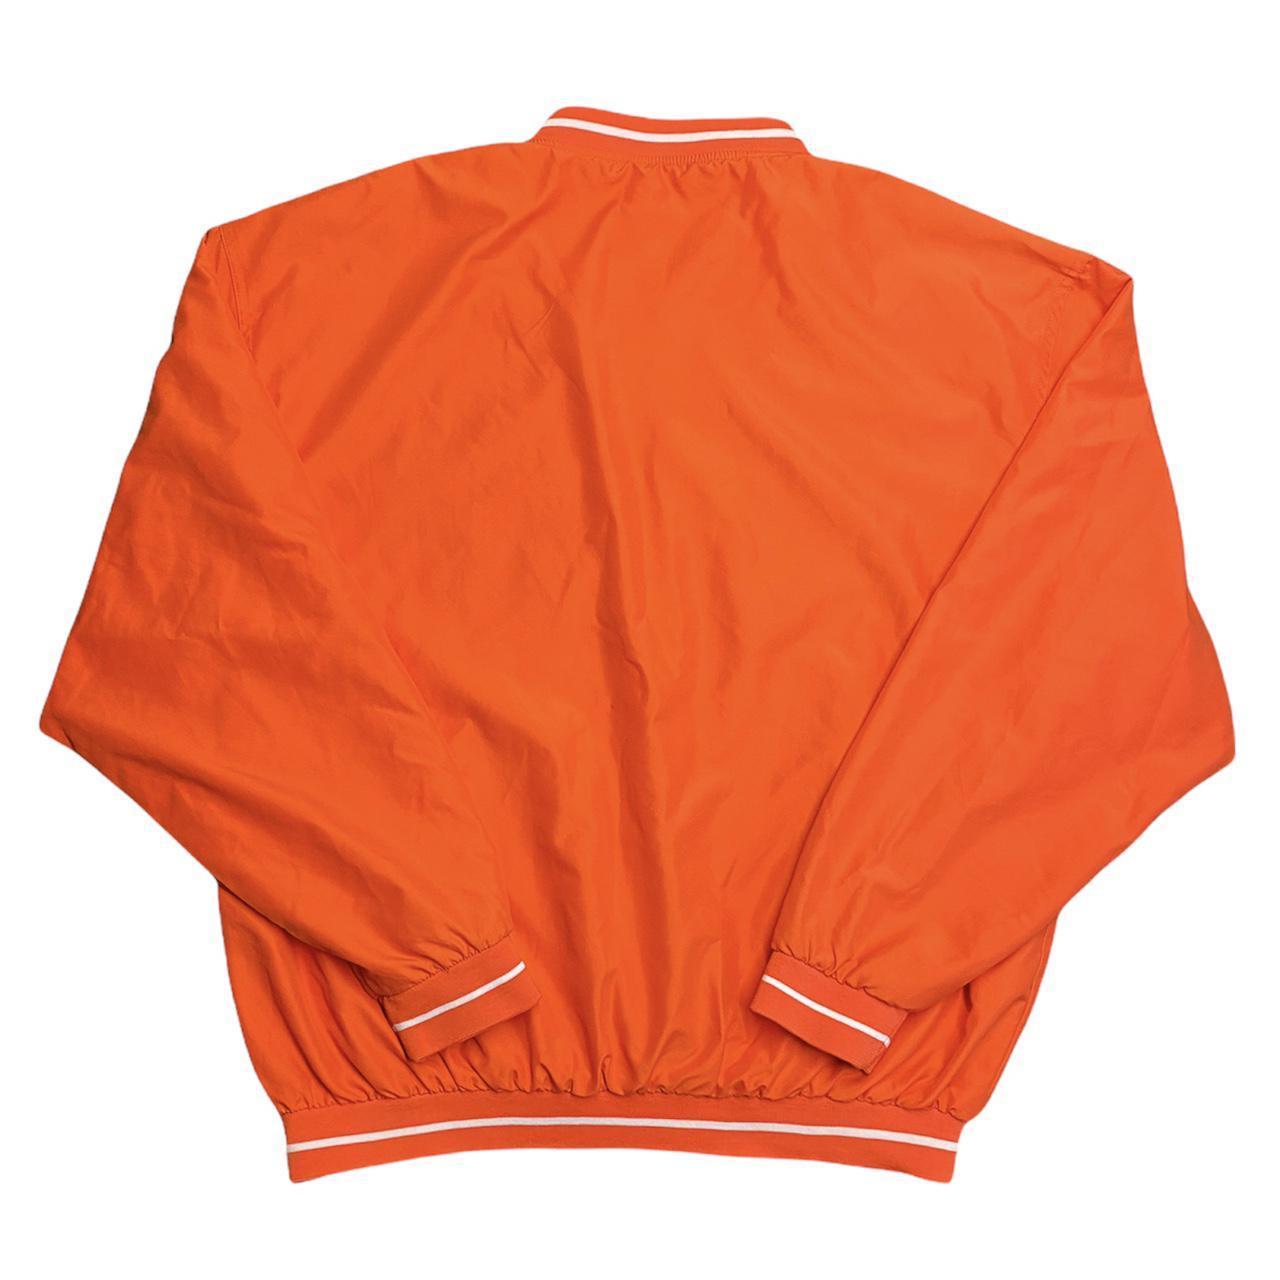 NFL Men's Orange Sweatshirt (2)